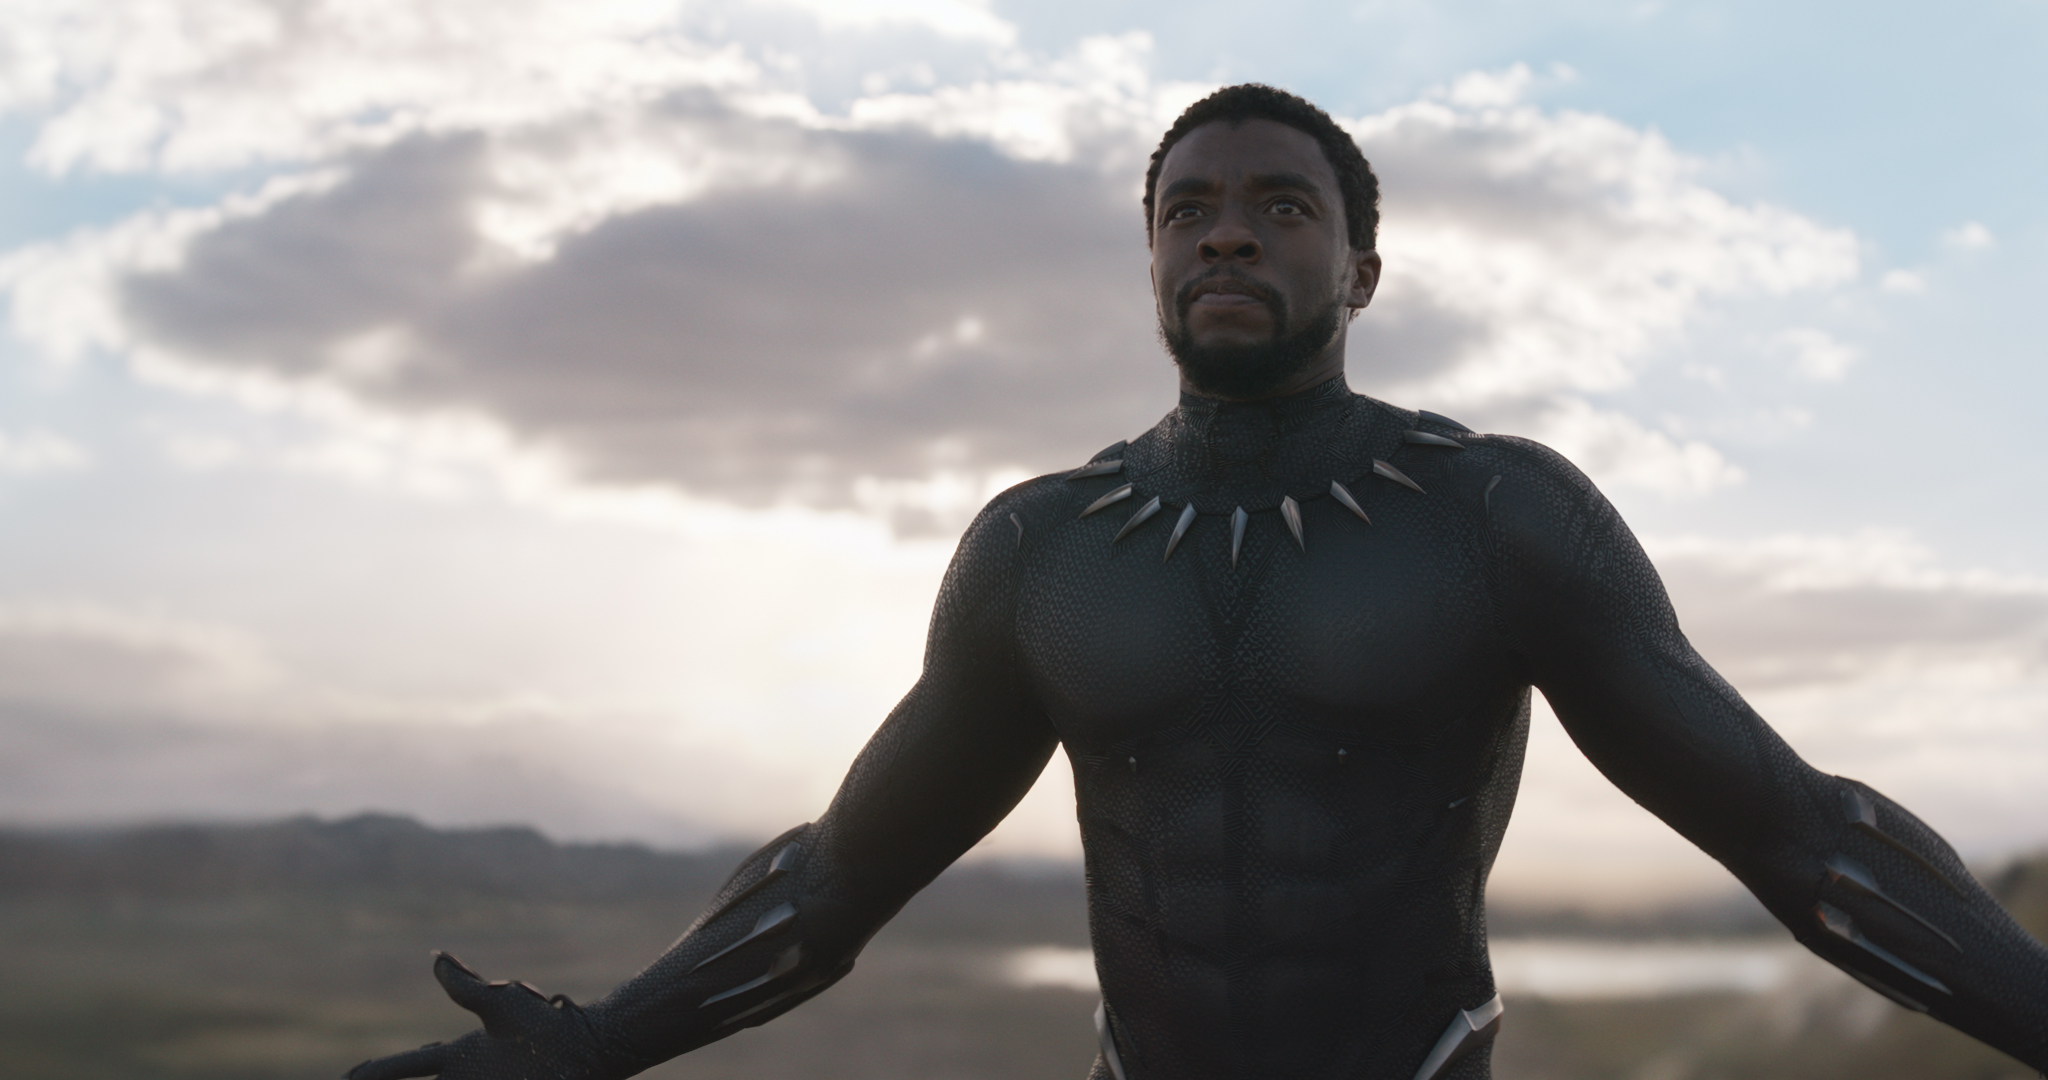 Addio a Chadwick Boseman, l'attore di “Black Panther” aveva 43 anni | RB Casting